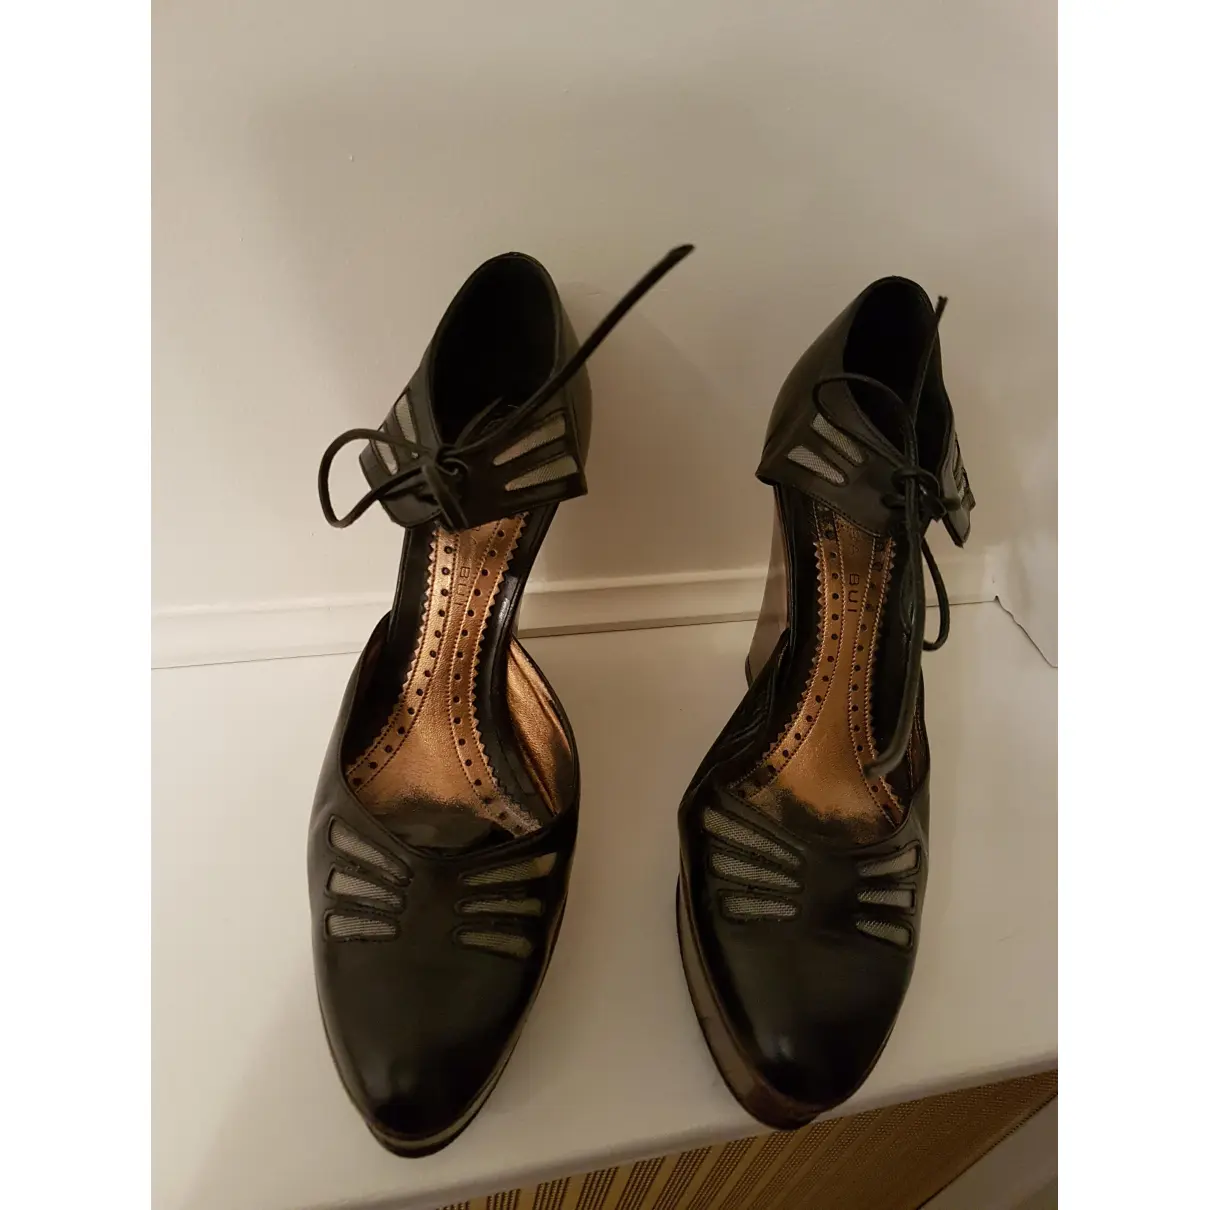 Buy Barbara Bui Leather heels online